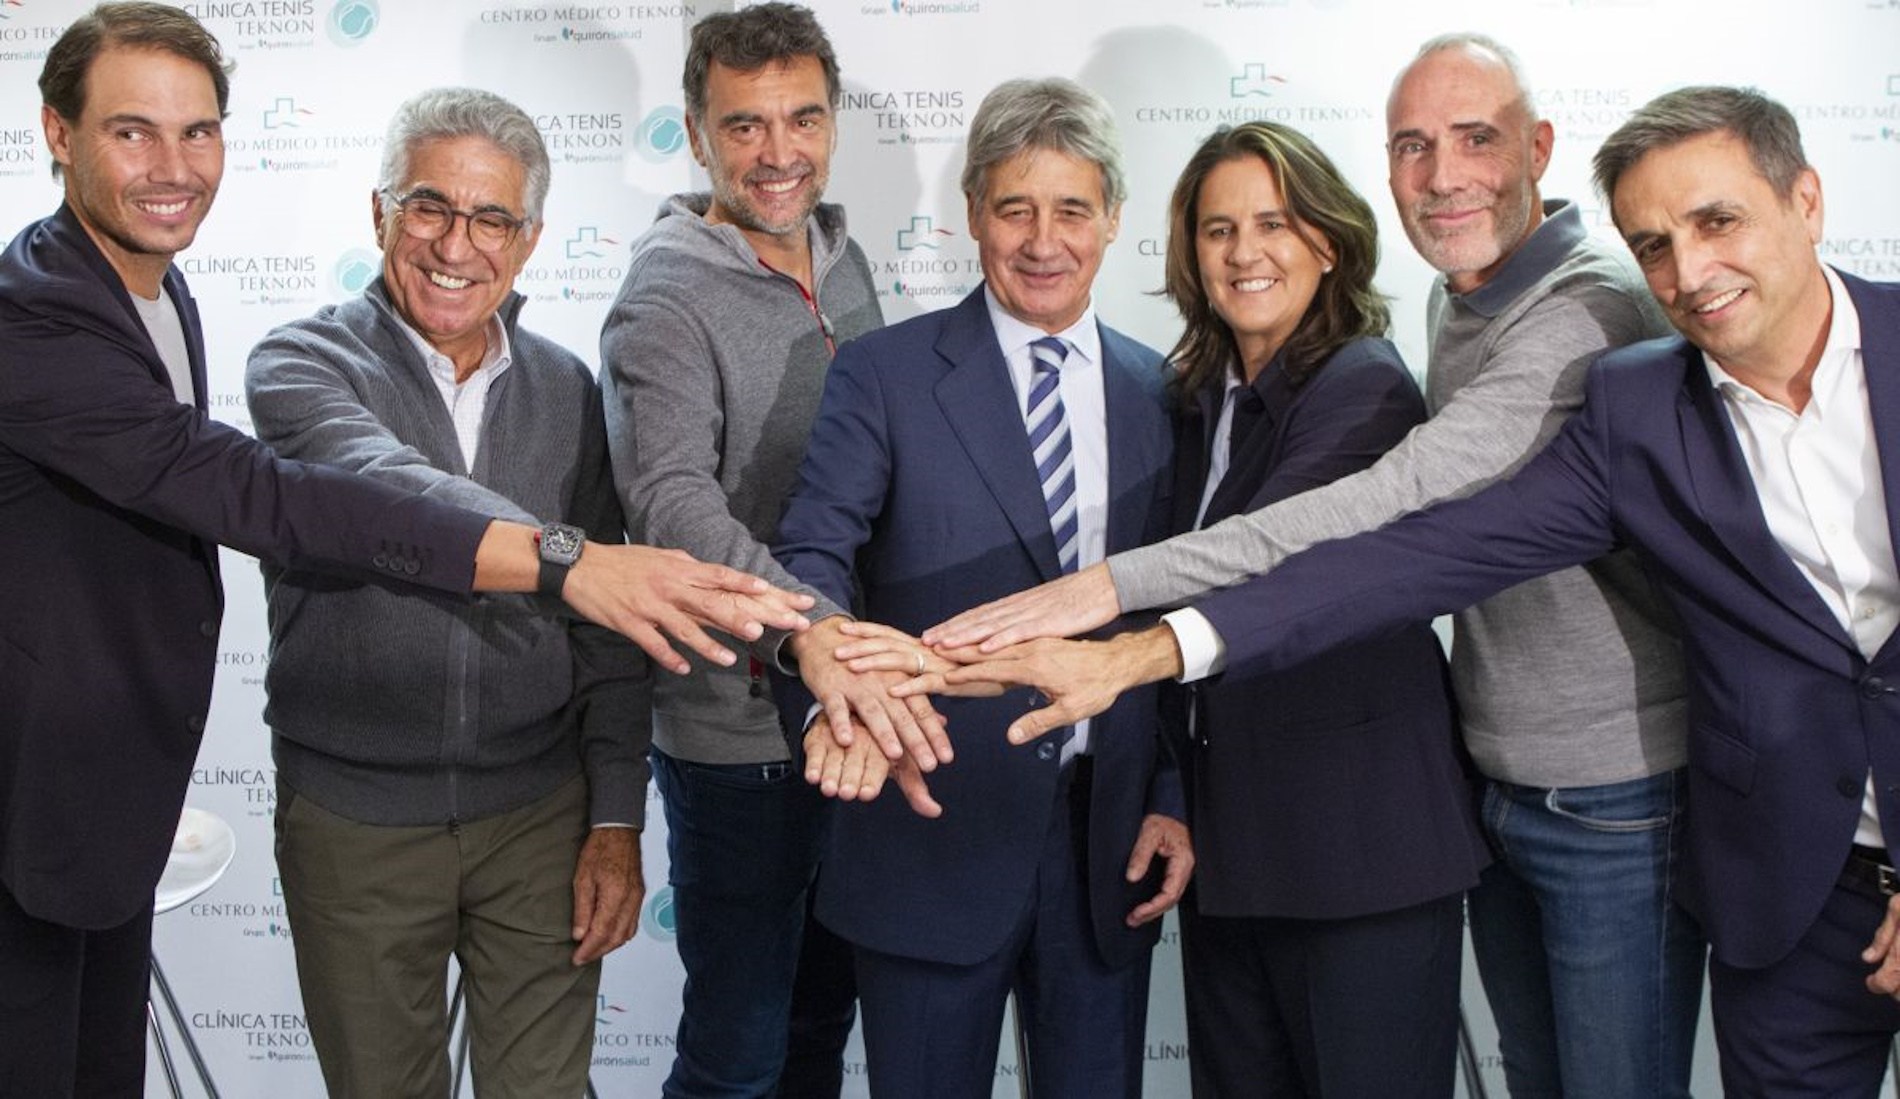 Leyendas del tenis español visitan la nueva Clínica Tenis del Centro Médico Teknon